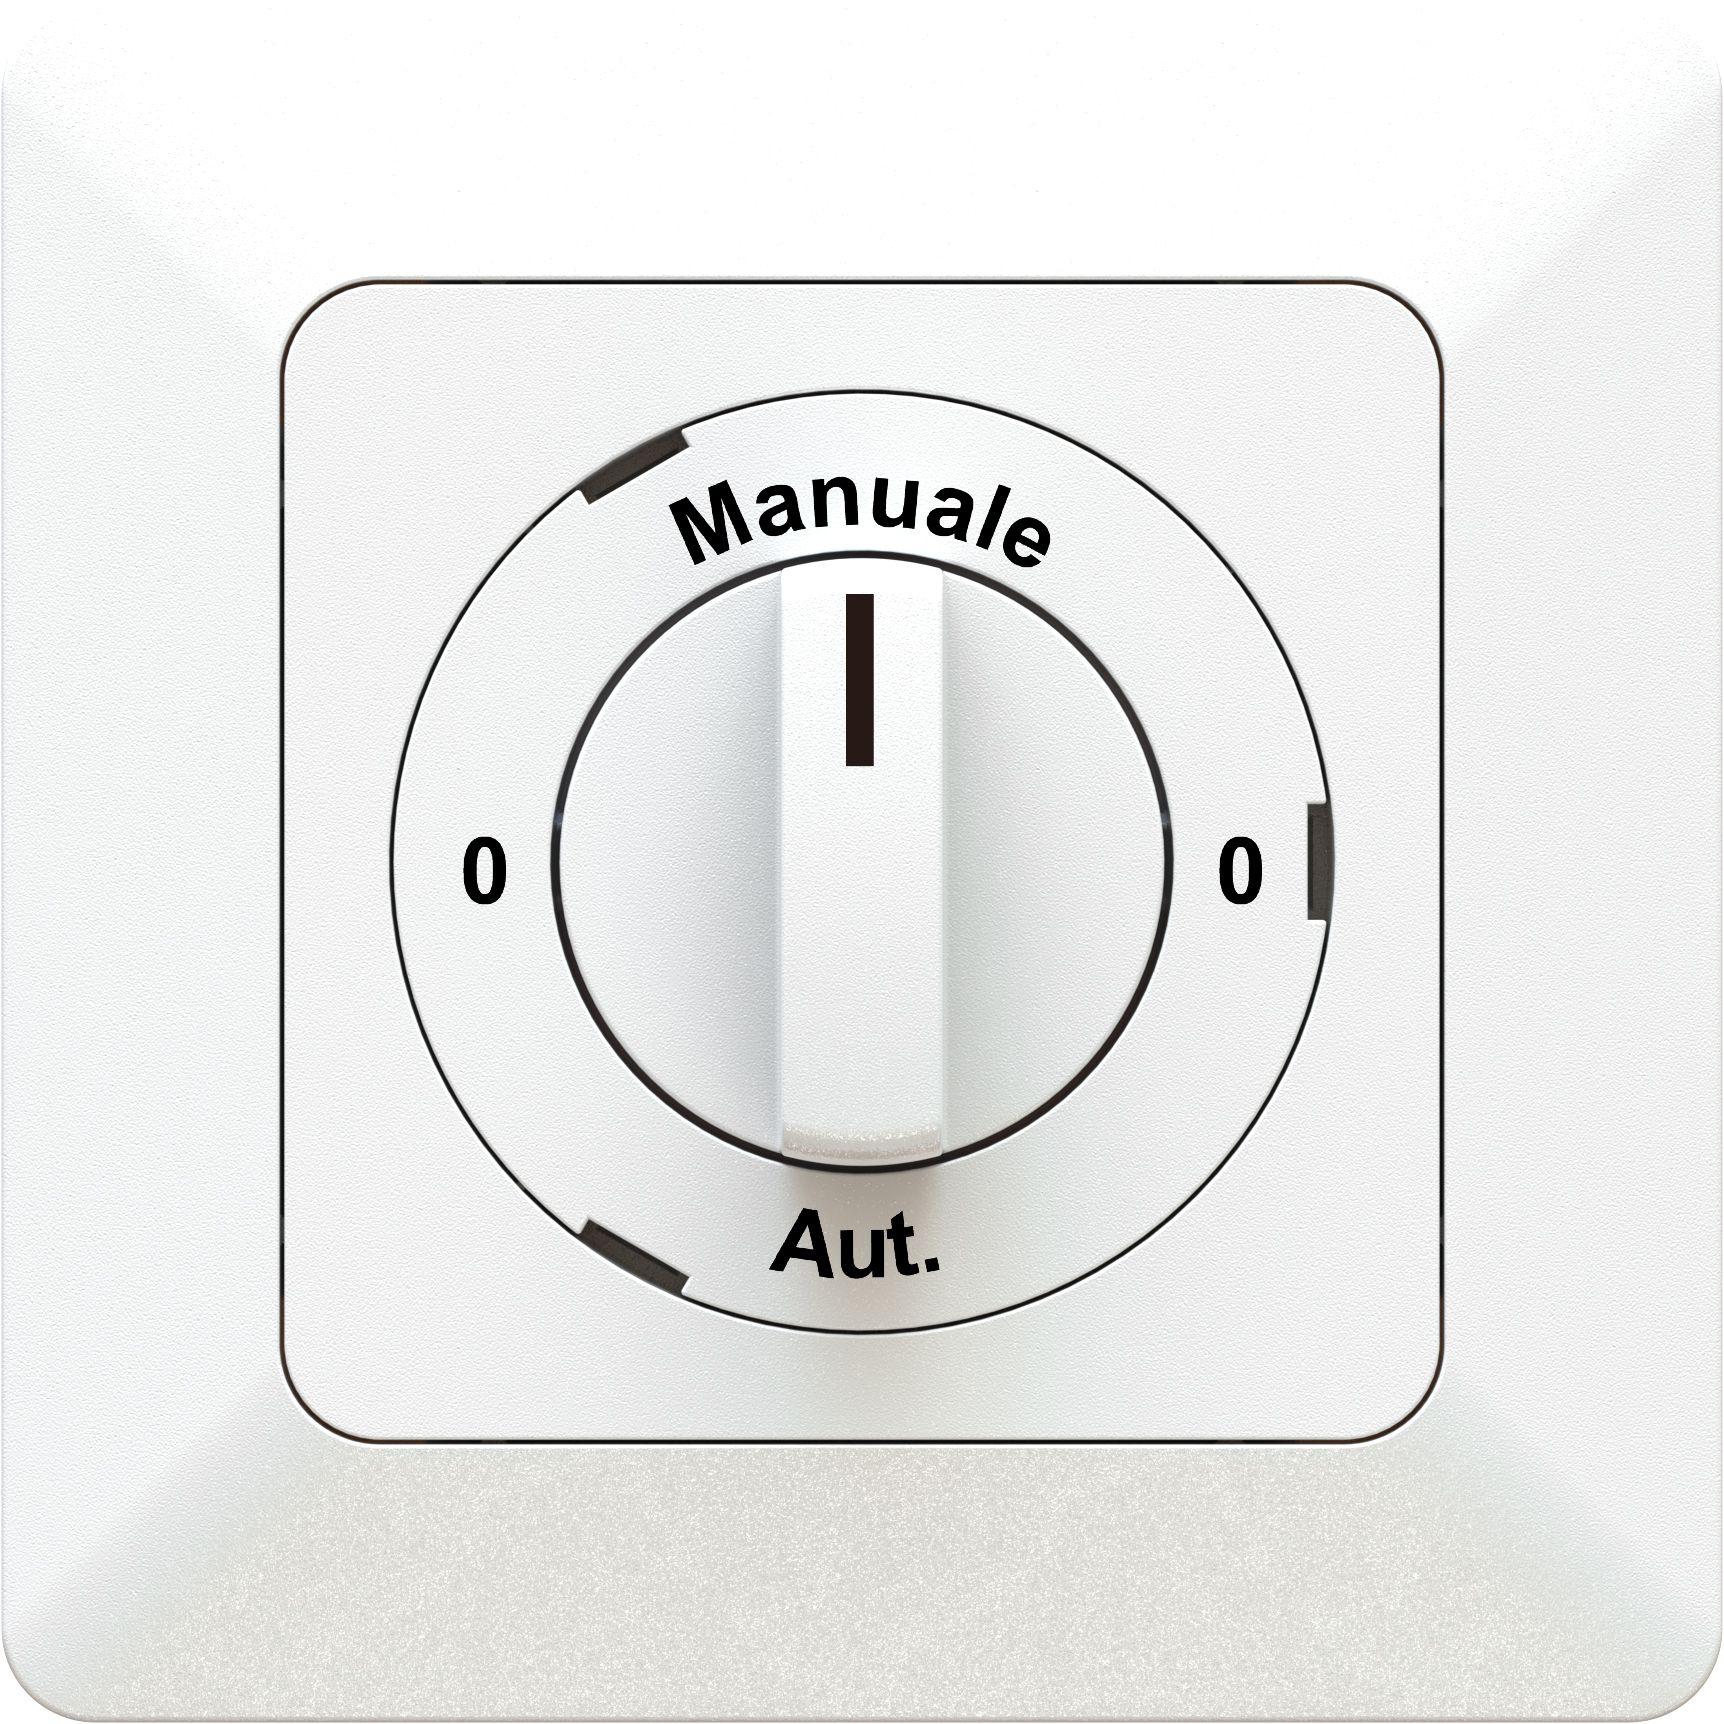 interrupteur rotatif schéma 2/1L 0-Manuale-0-Aut. ENC priamos bc